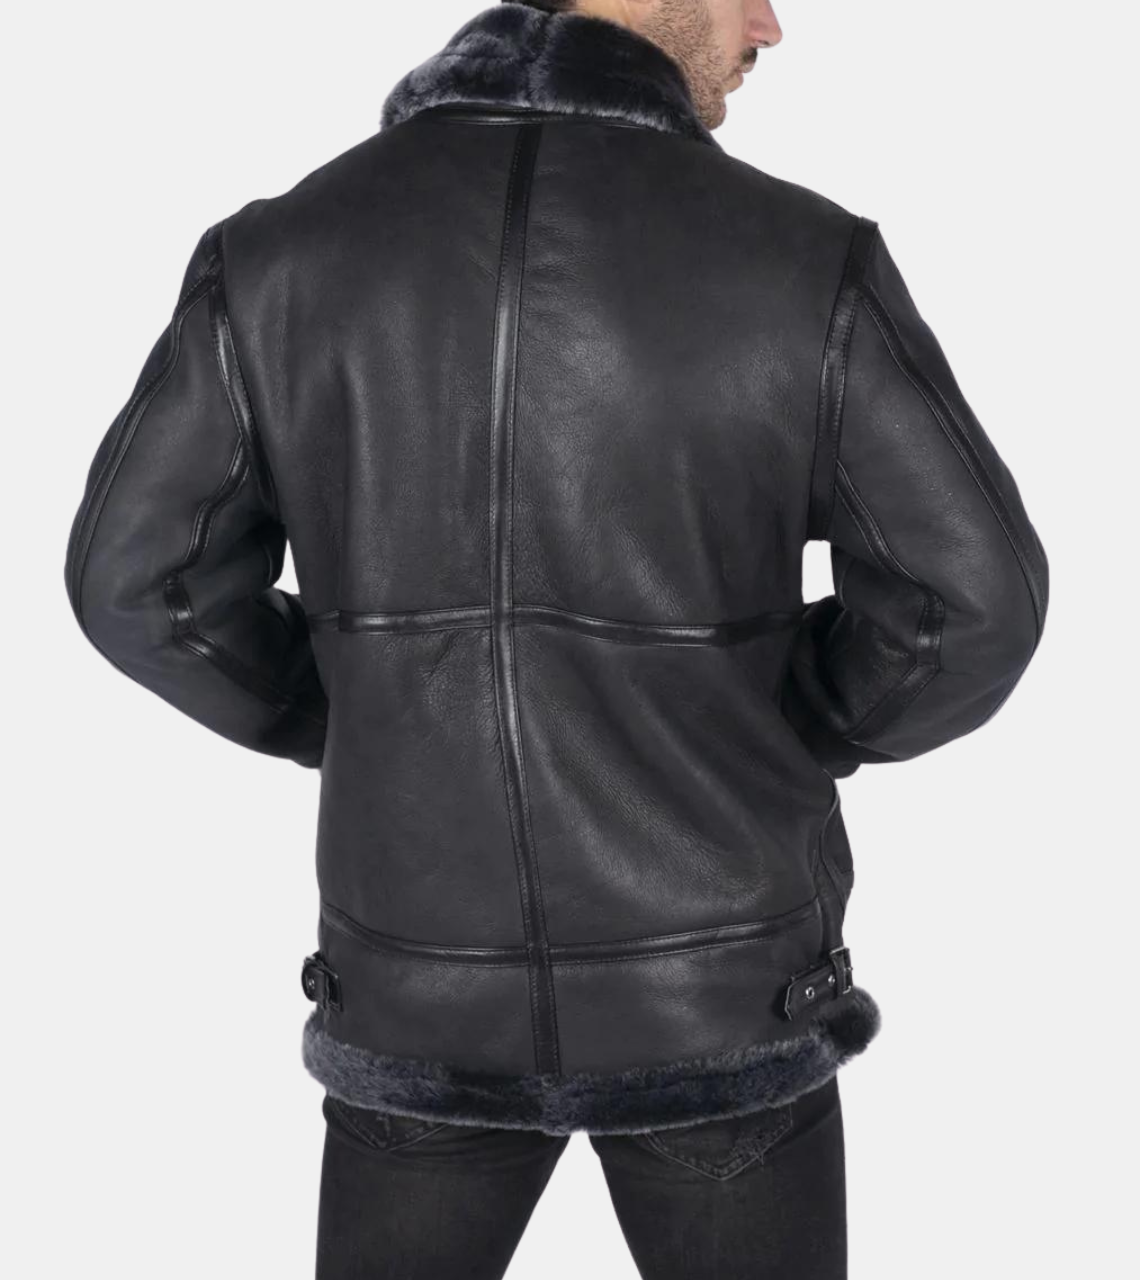  Ciel Men's Black Shearling Leather Jacket Back